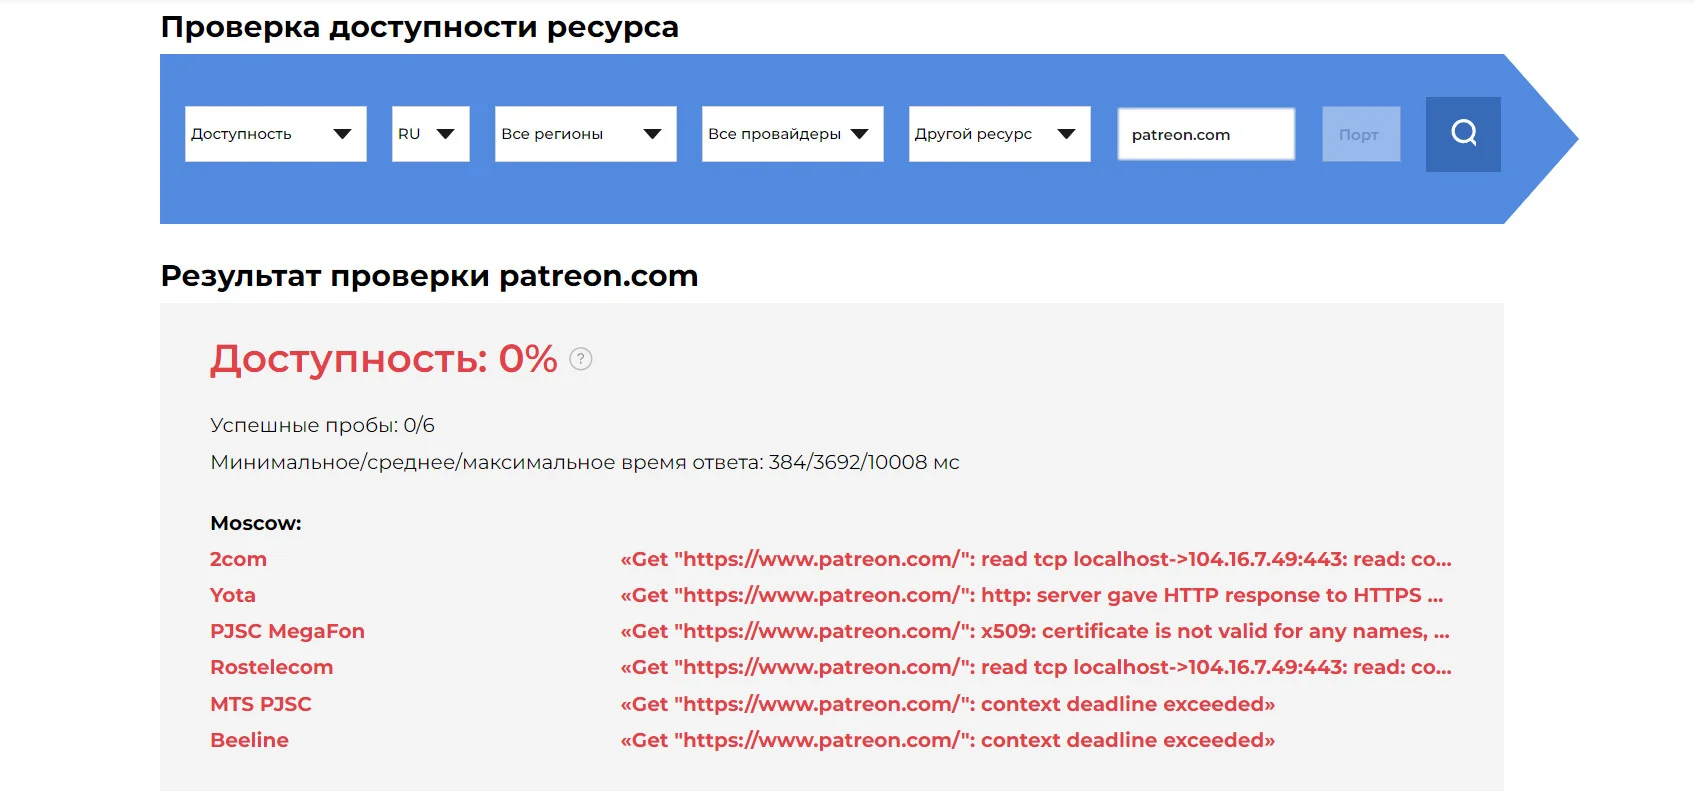 В России заблокировали доступ к сайту Patreon - фото 1